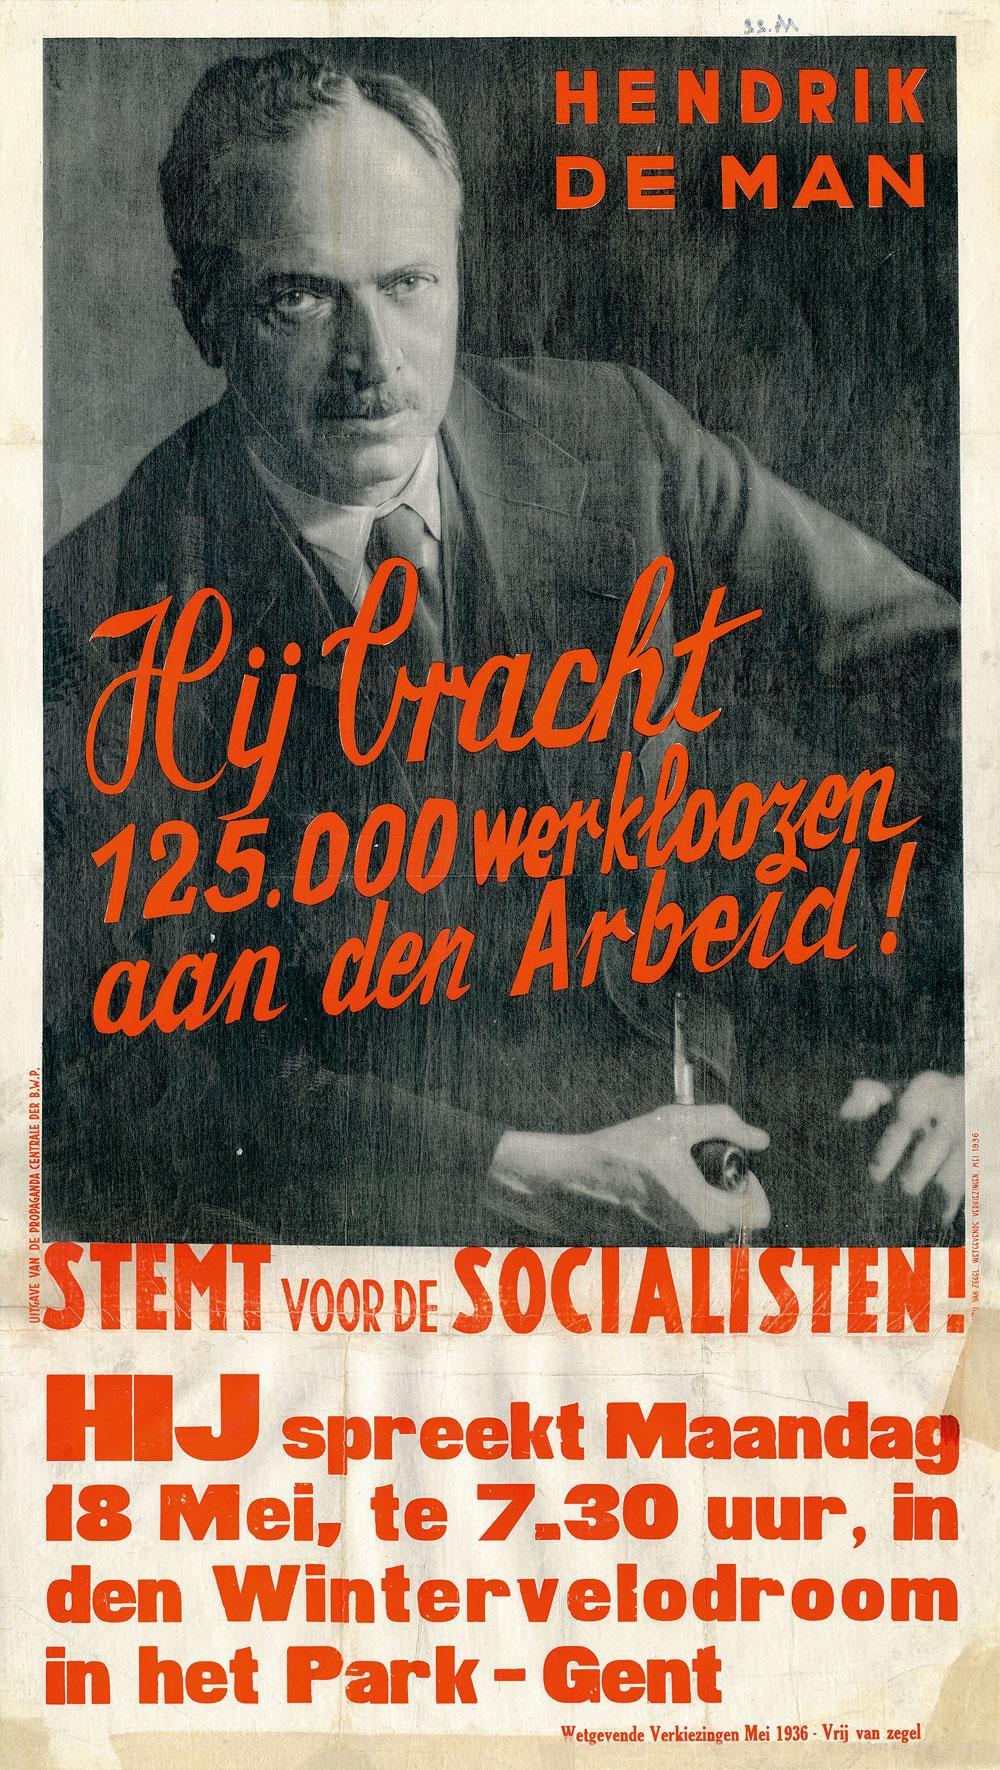 Links en collaborateur: de fascistische trekken van socialistenleider Hendrik de Man